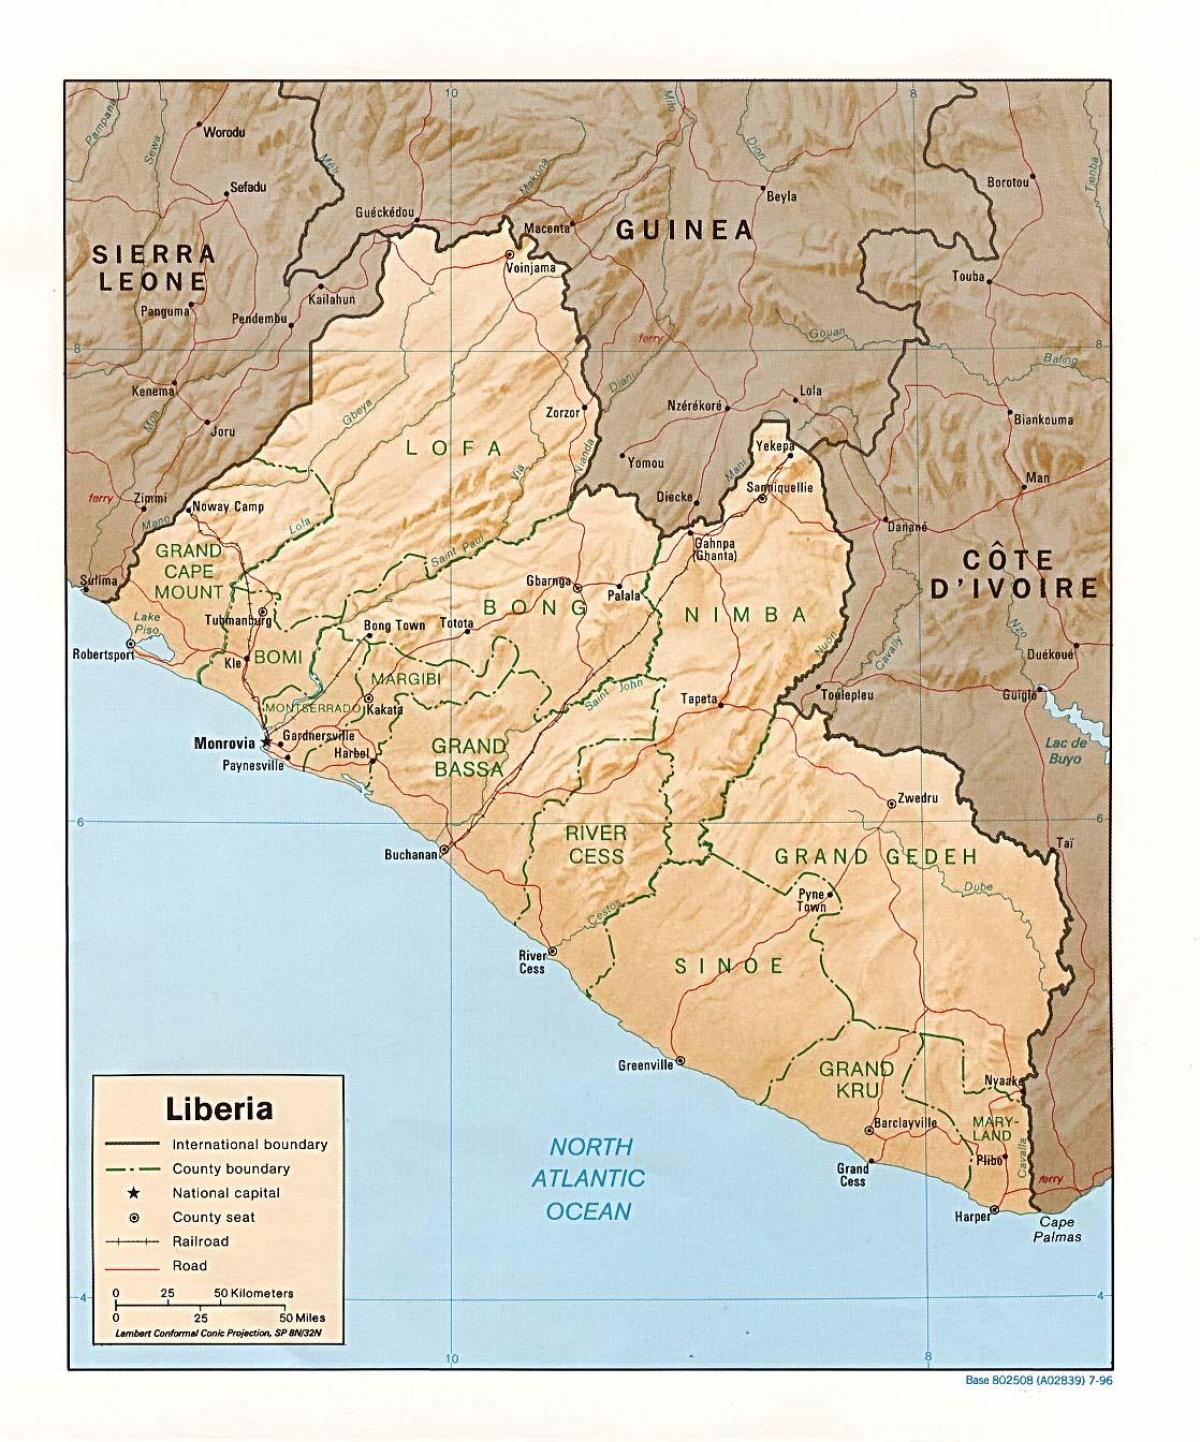 σχεδιάστε το ανάγλυφο χάρτη της Λιβερίας